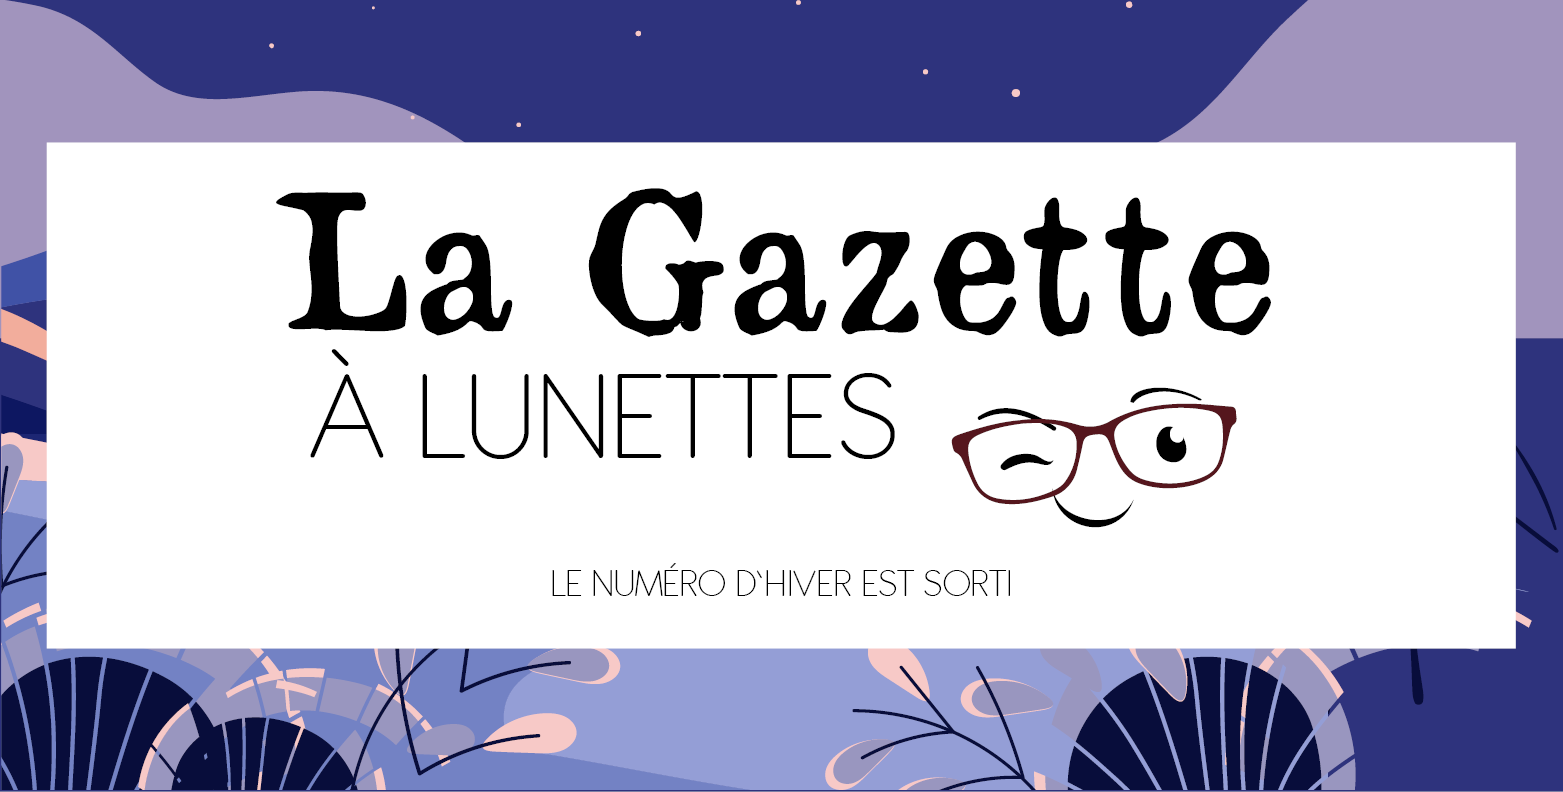 La Gazette à lunettes